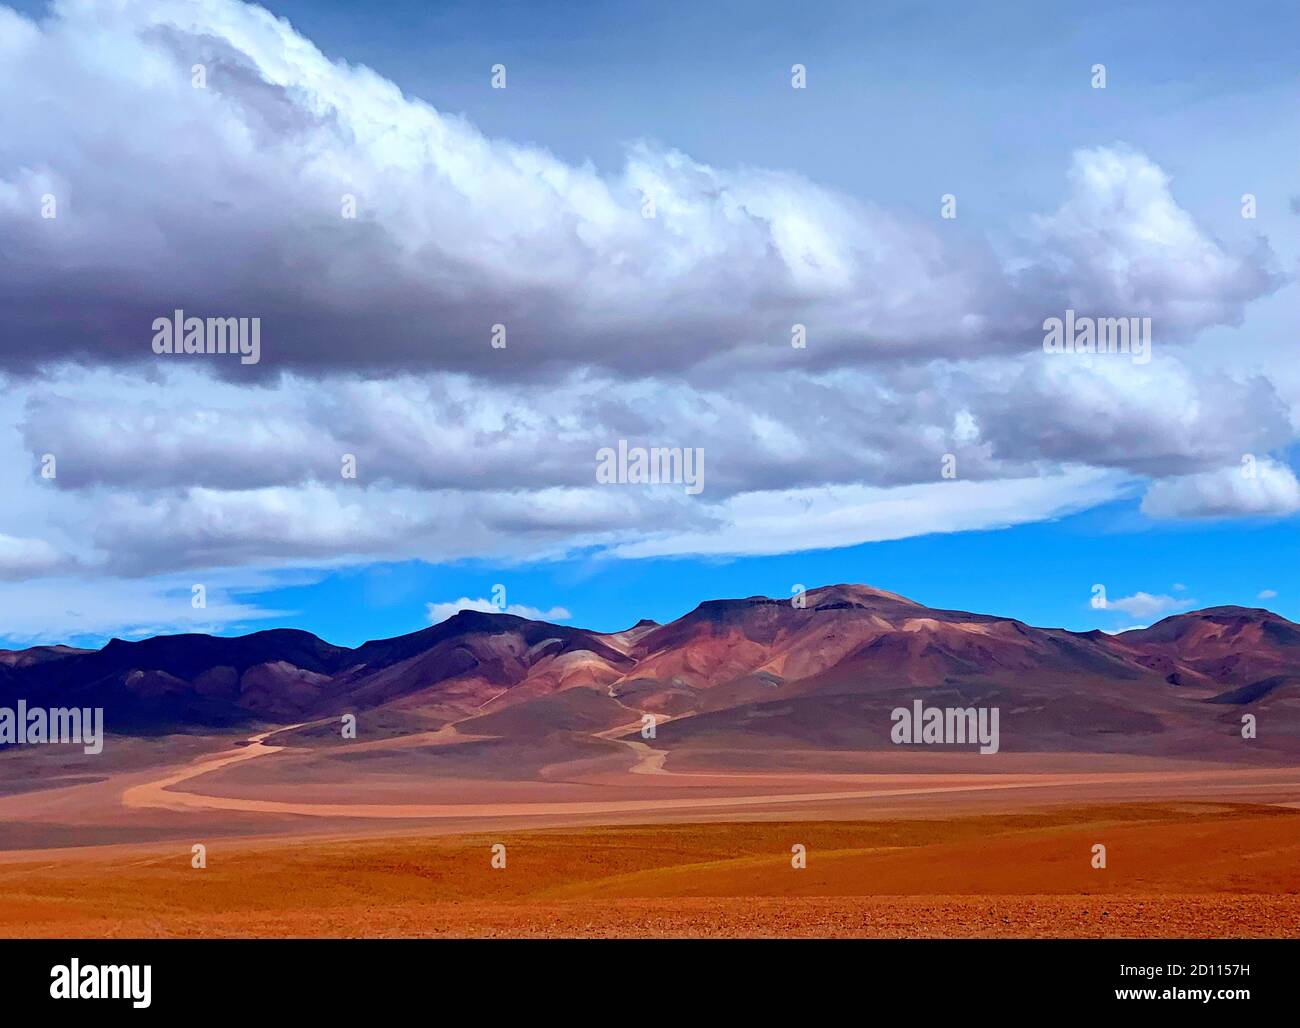 Montagnes volcaniques andines colorées dans le désert aride Atacama, nature sauvage impressionnante, paysage montagneux impressionnant, paysage de nuages pittoresques dans le ciel Banque D'Images